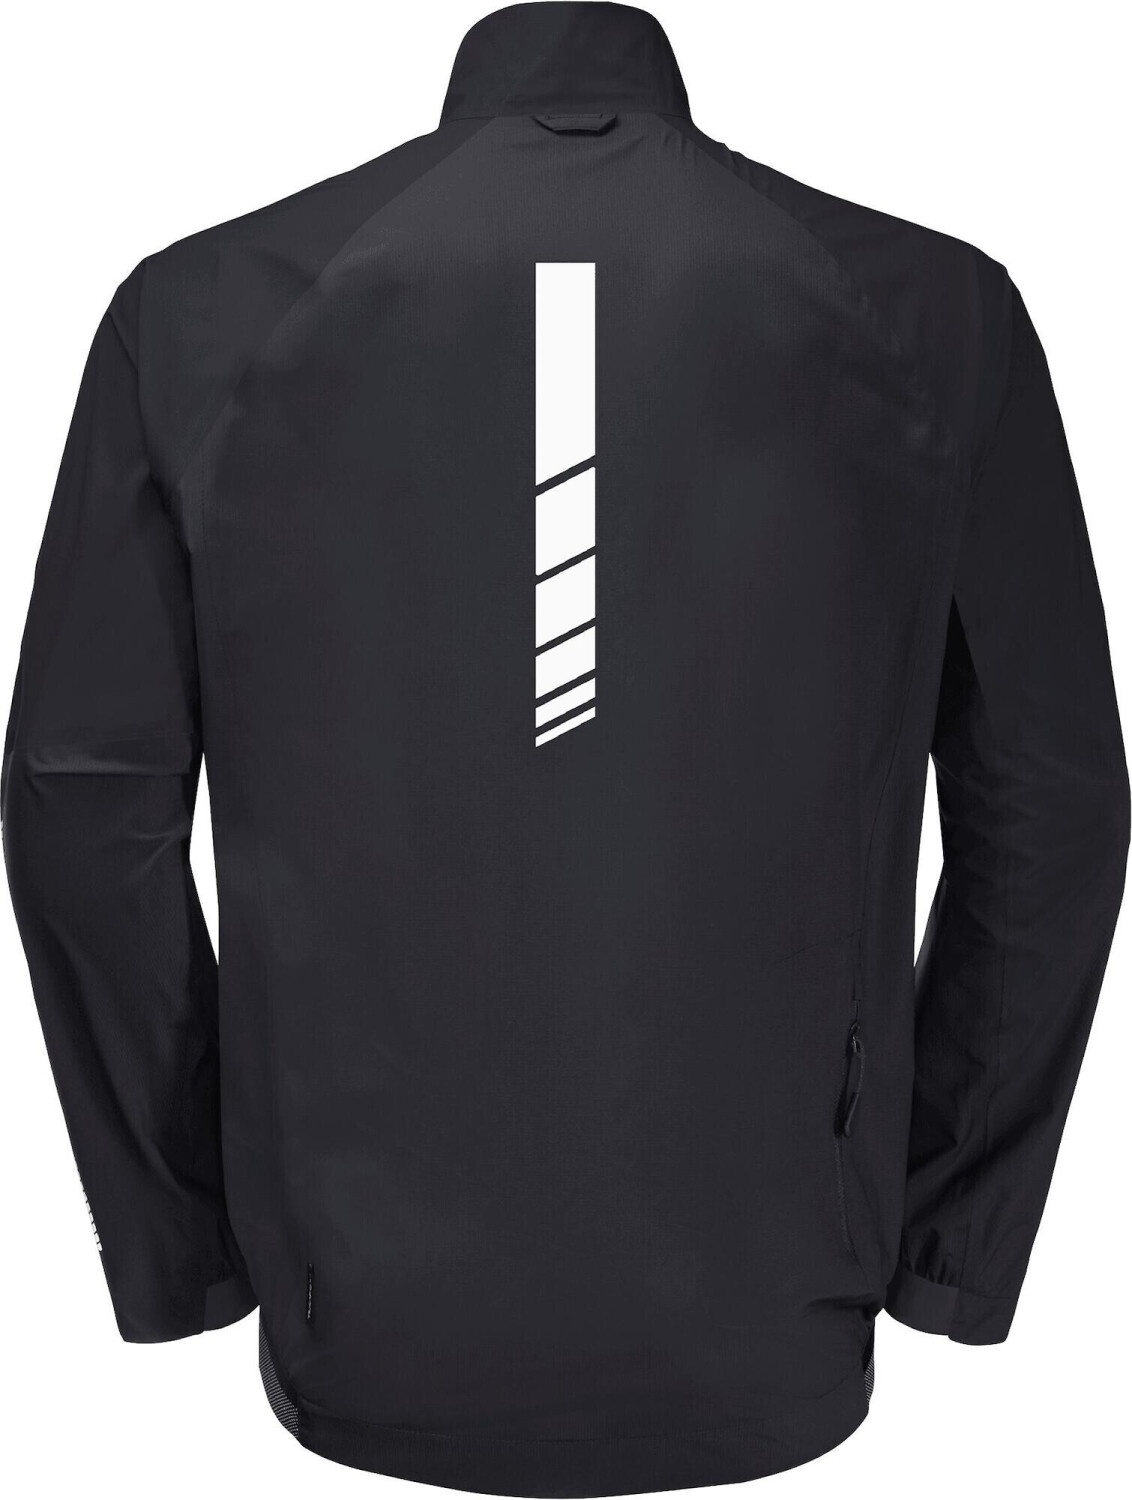 Jack Wolfskin Morobbia 2.5L Jacket M black ab 88,99 € | Preisvergleich bei